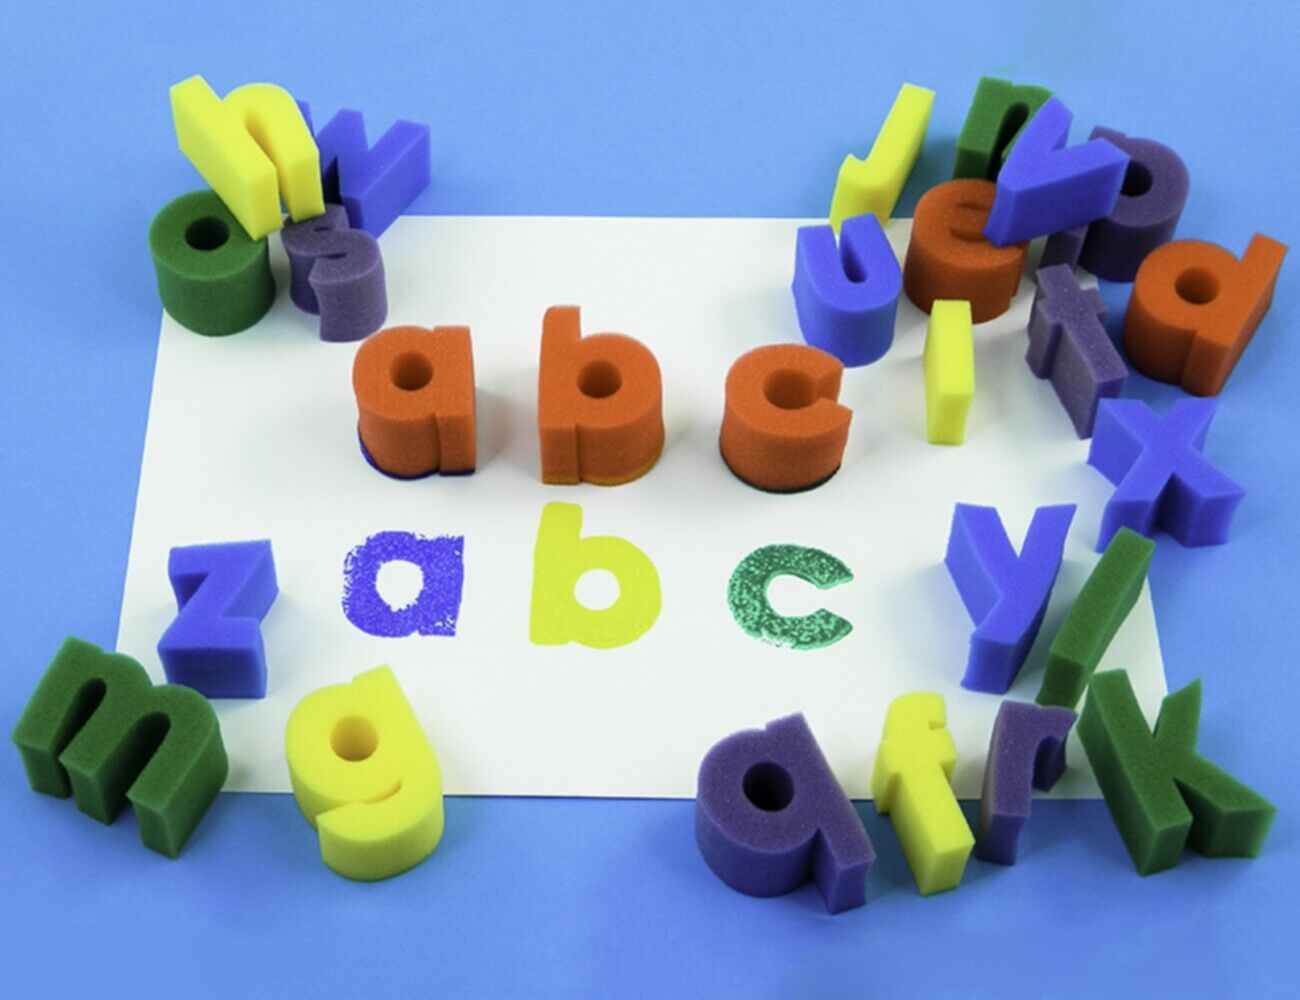  18 actividades ingeniosas de construcción de palabras para niños